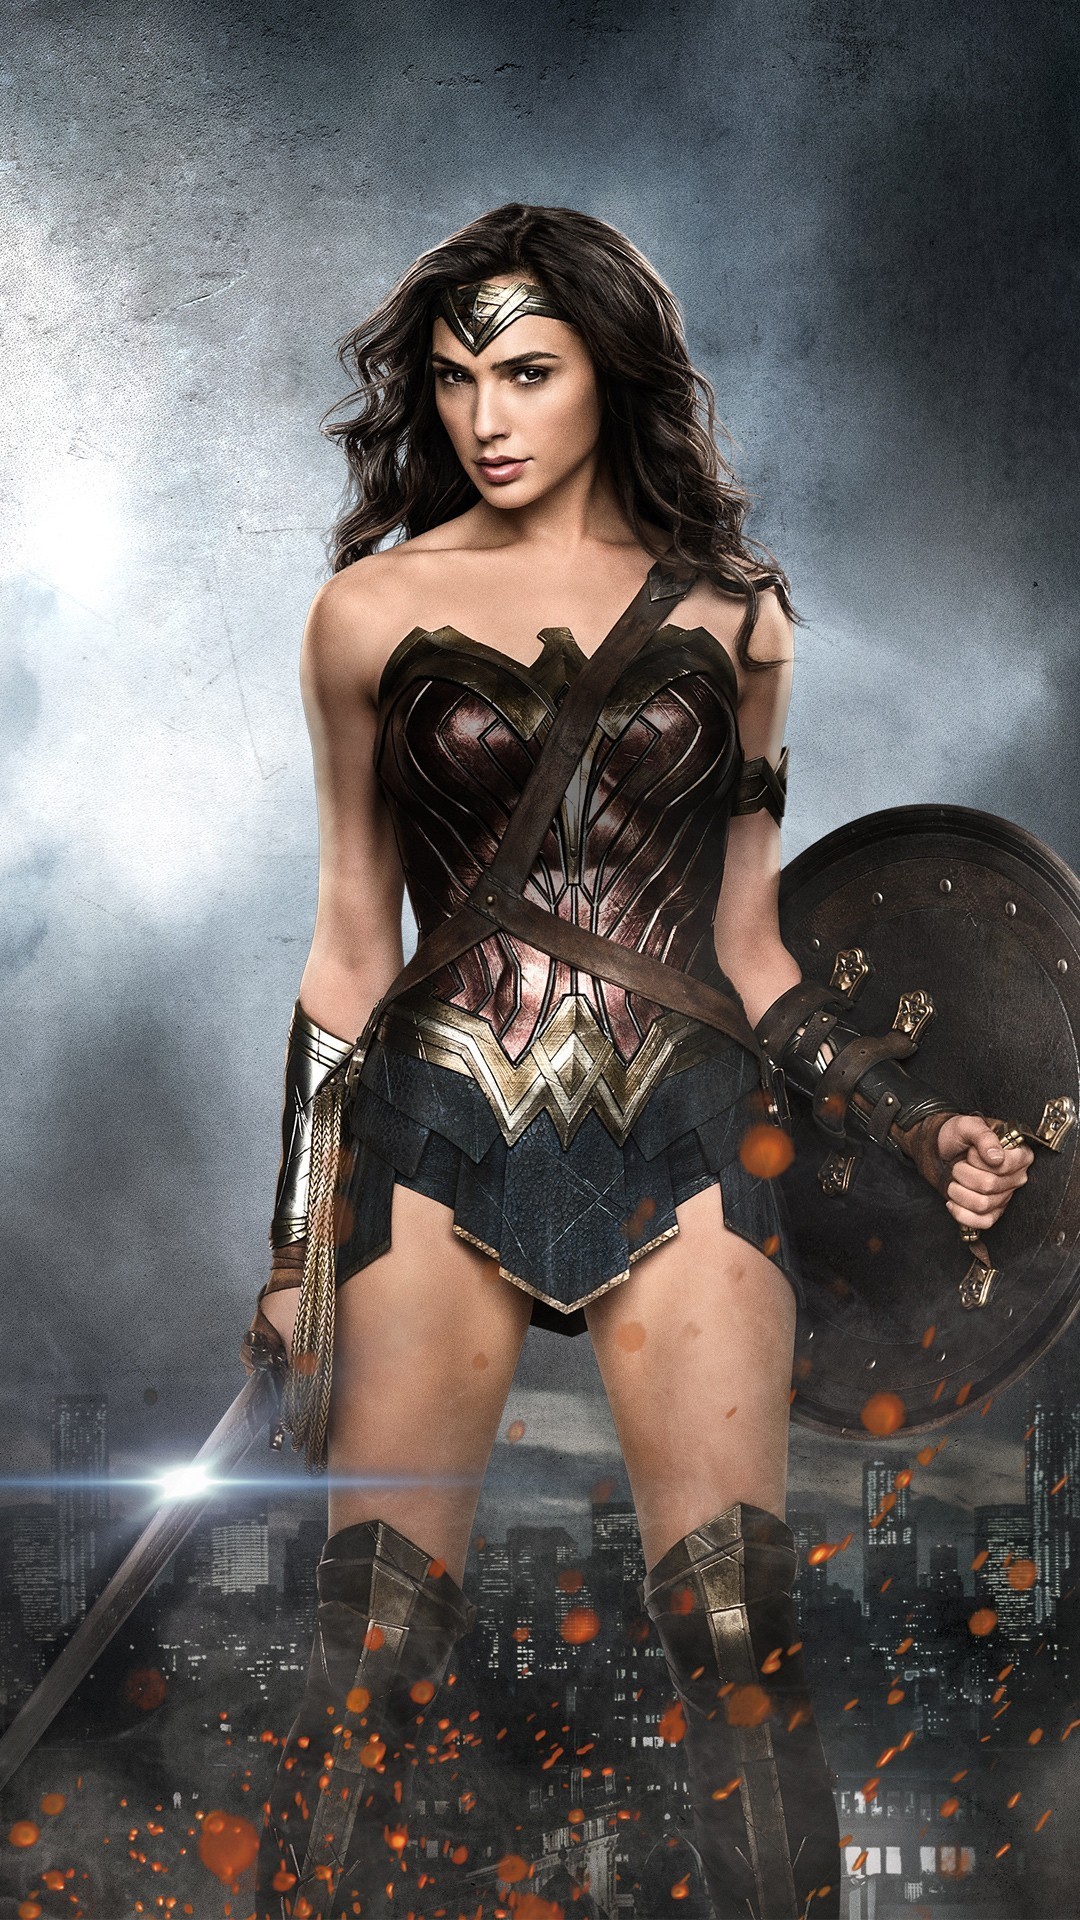 1080x1920 Wonder Woman Gal Gadot iPhone Wallpaper resolution 